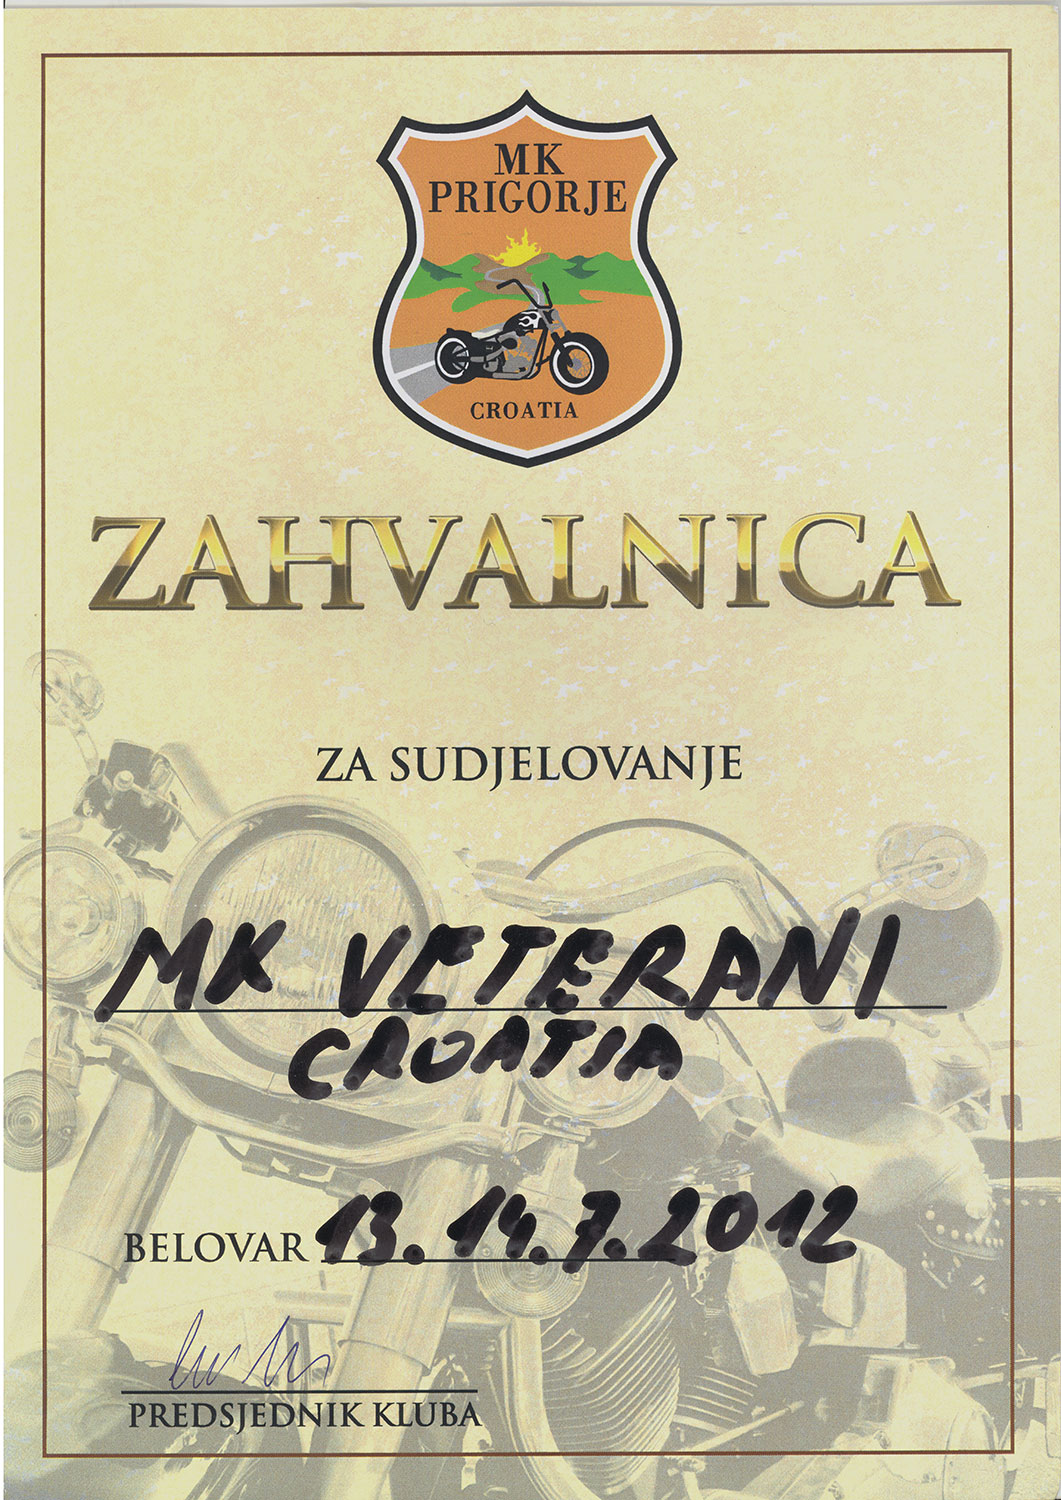 2012 07 13 mk prigorje bjelovar